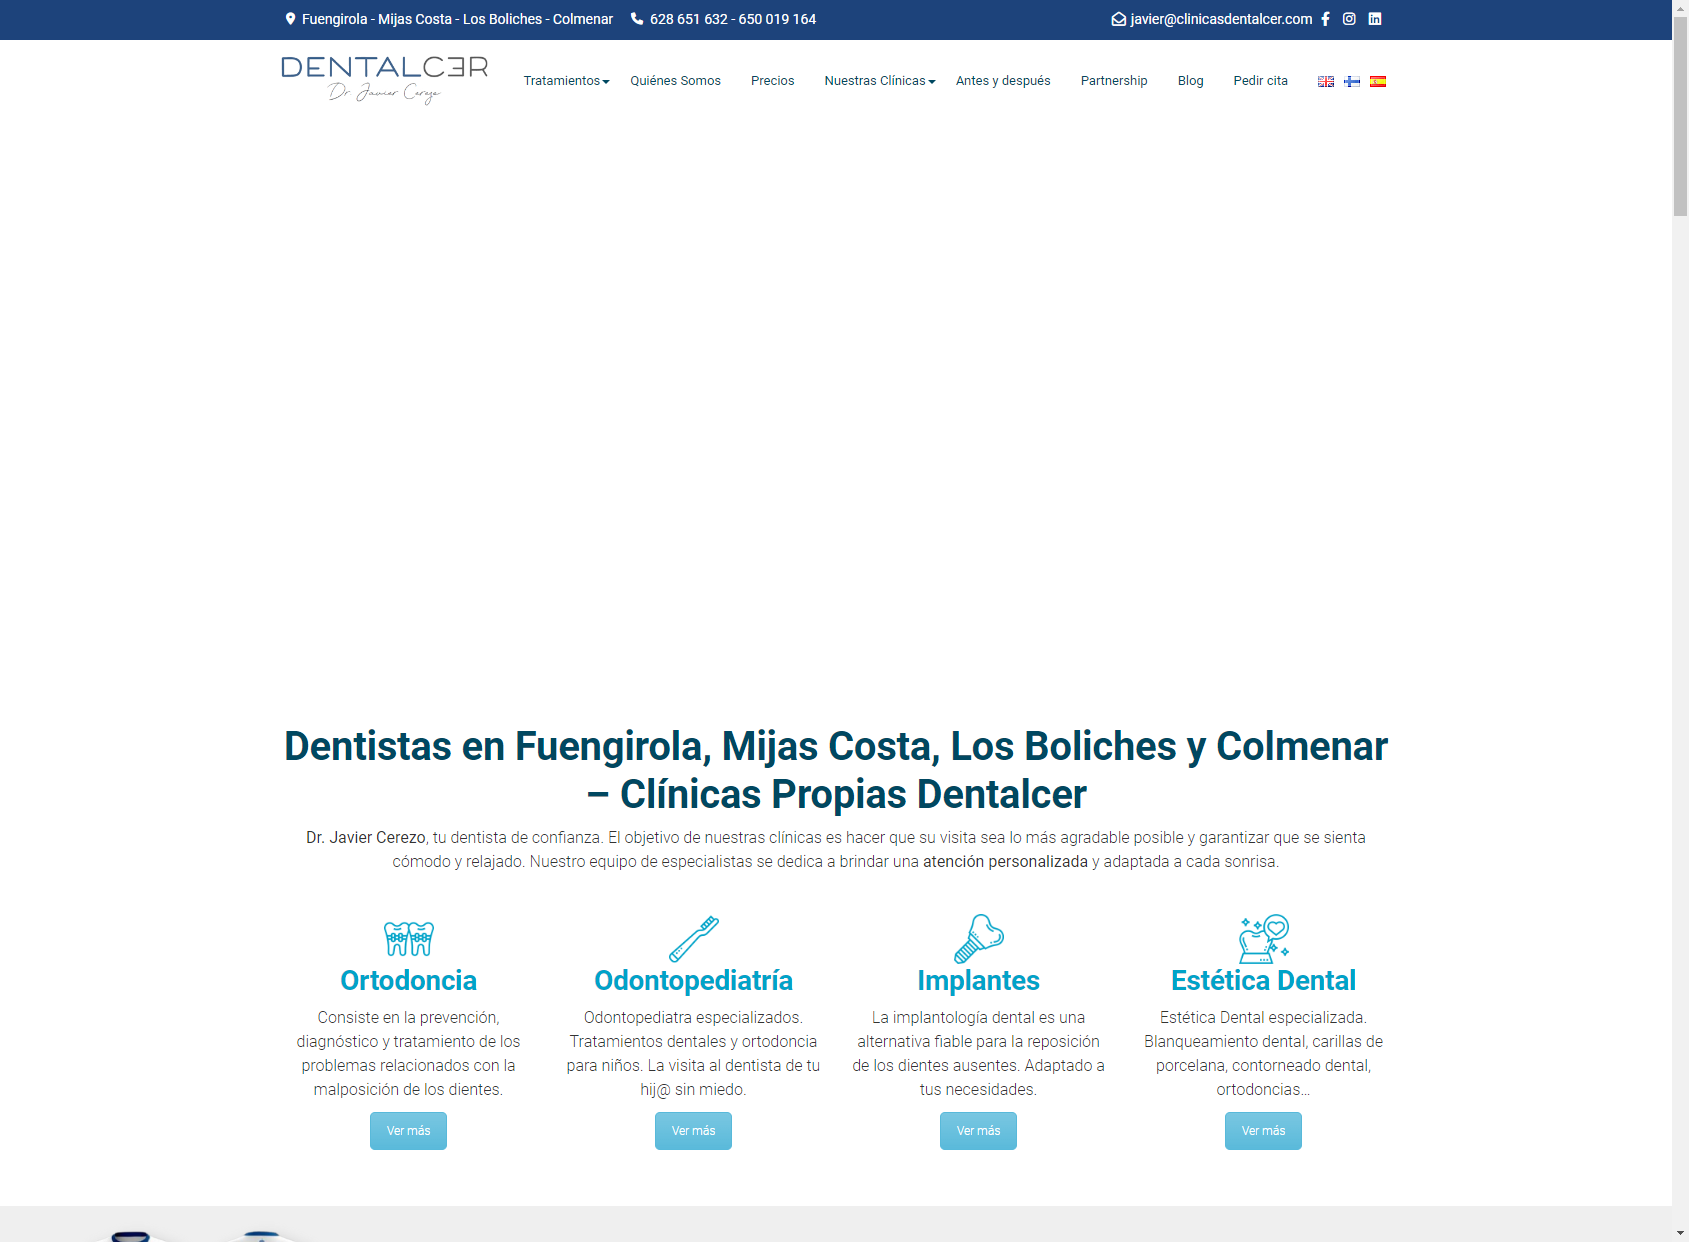 Clínica DentalCer Mijas Costa | Dr. Javier Cerezo